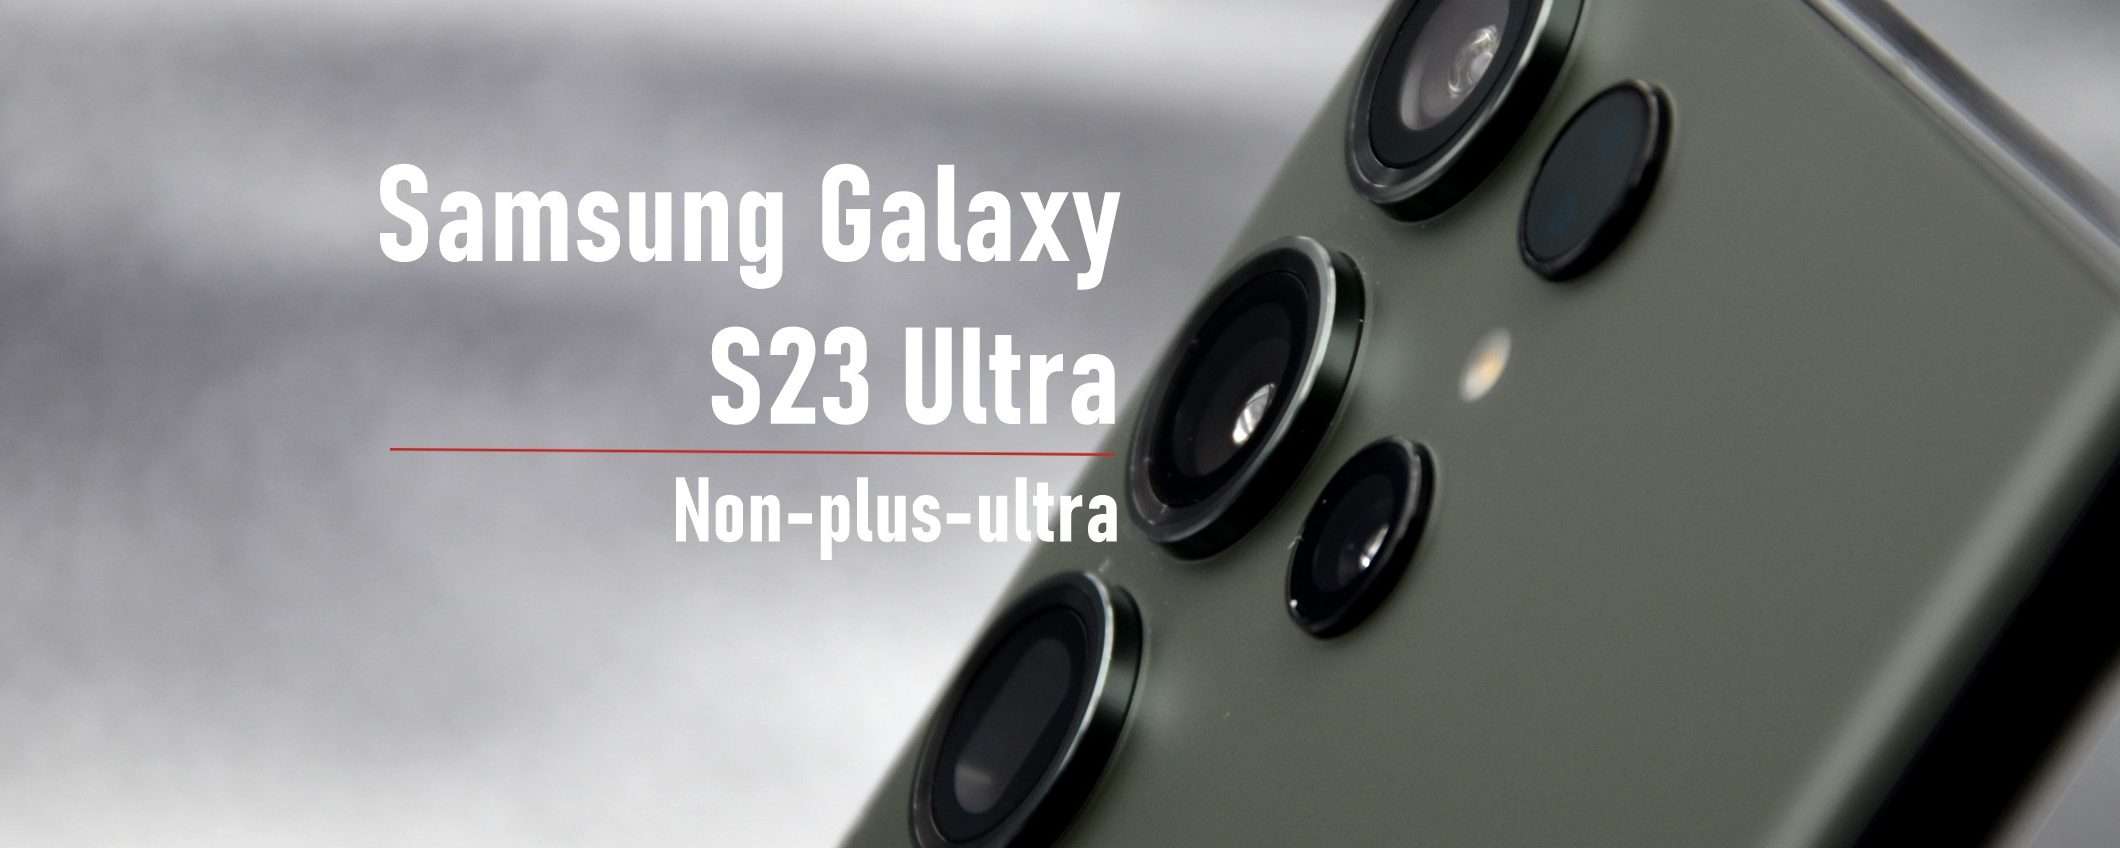 Samsung Galaxy S23 Ultra: chiamatelo semmai S23 non-plus-ultra